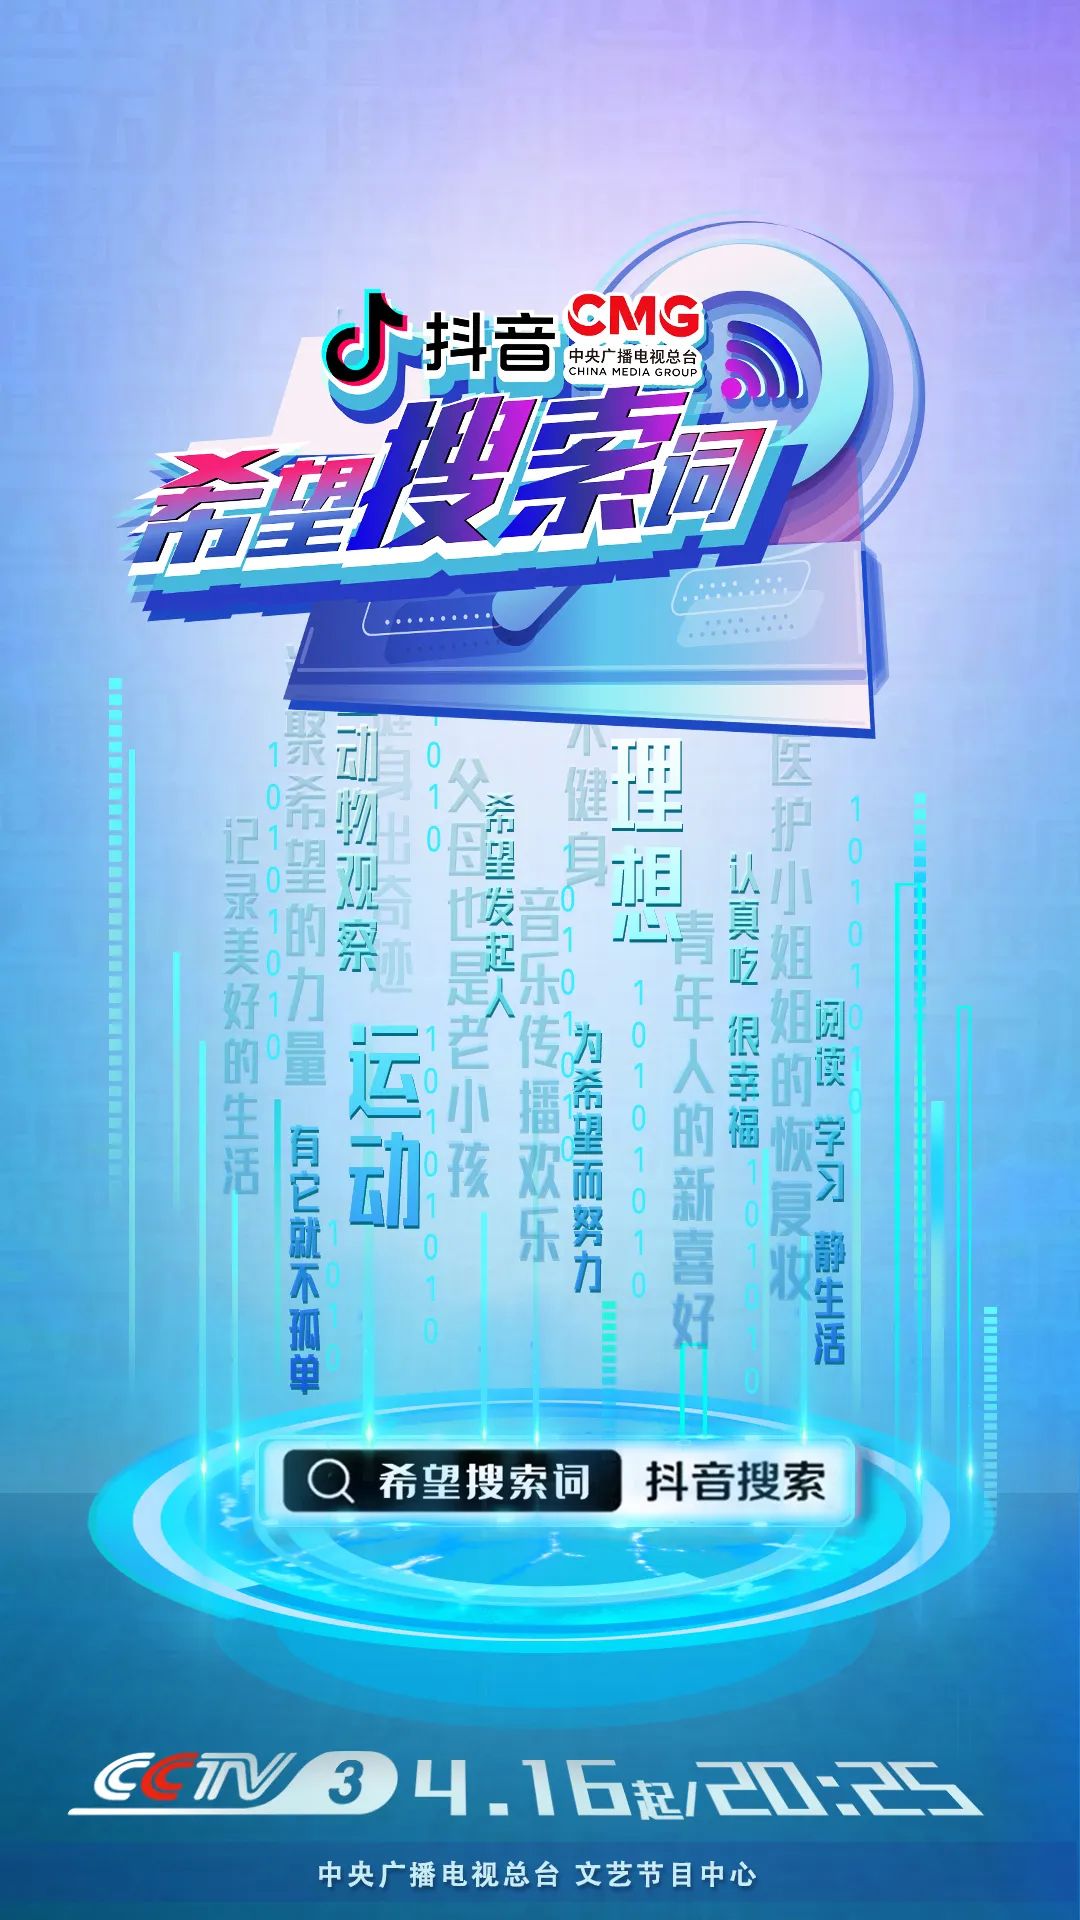 总台融媒体云综《希望搜索词》4月16日CCTV-3开播，为复工补给能量